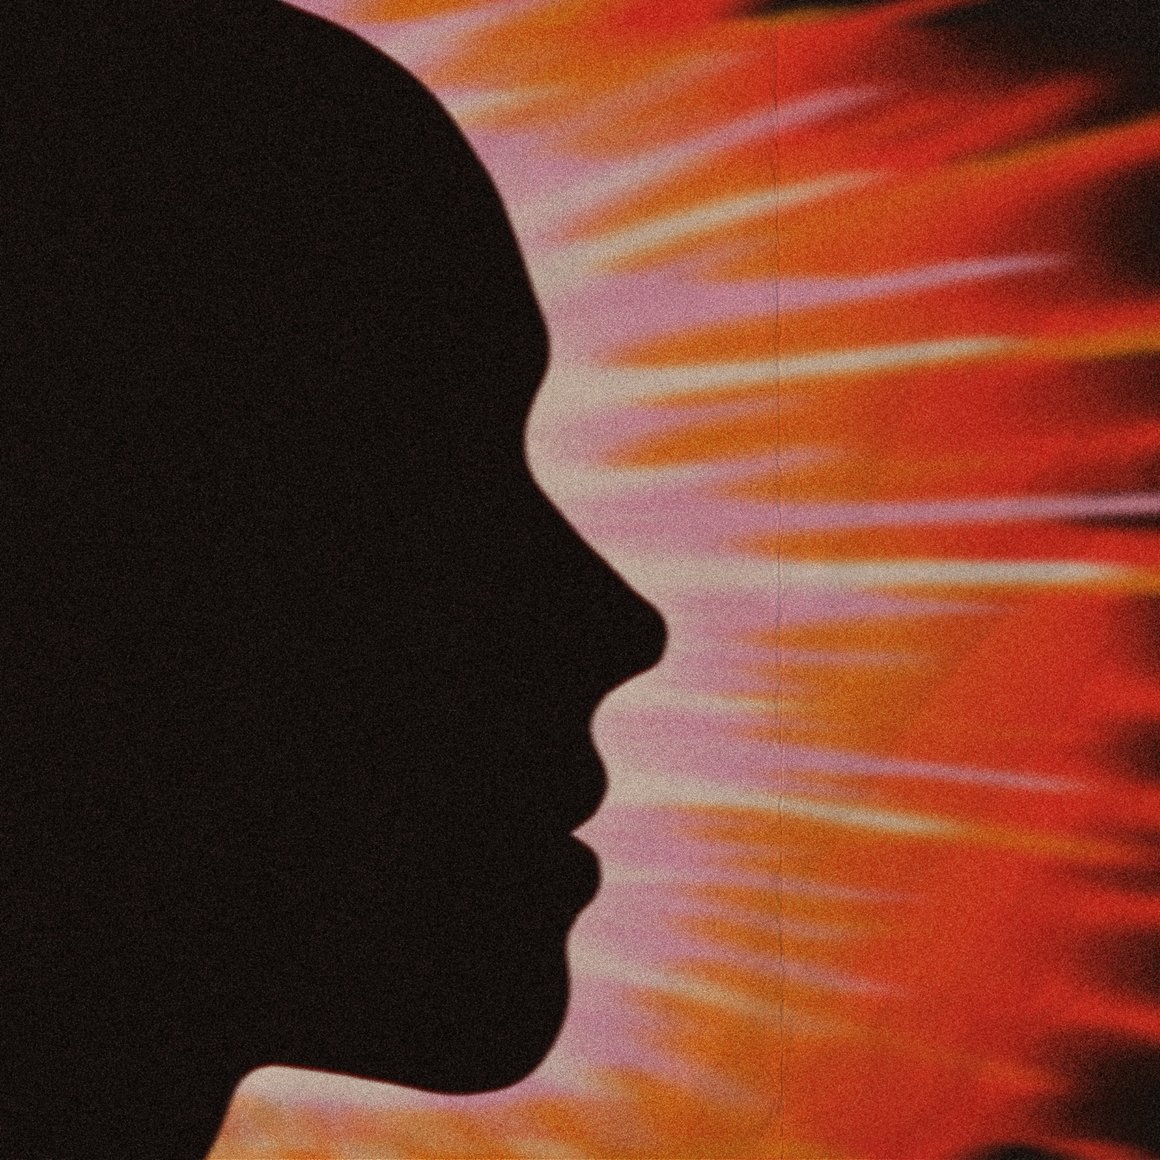 Cover de l'EP Boy Meets The World de l'artiste Eyeto8. Cela représente la silhouette d'un visage avec un coucher de soleil derrière.